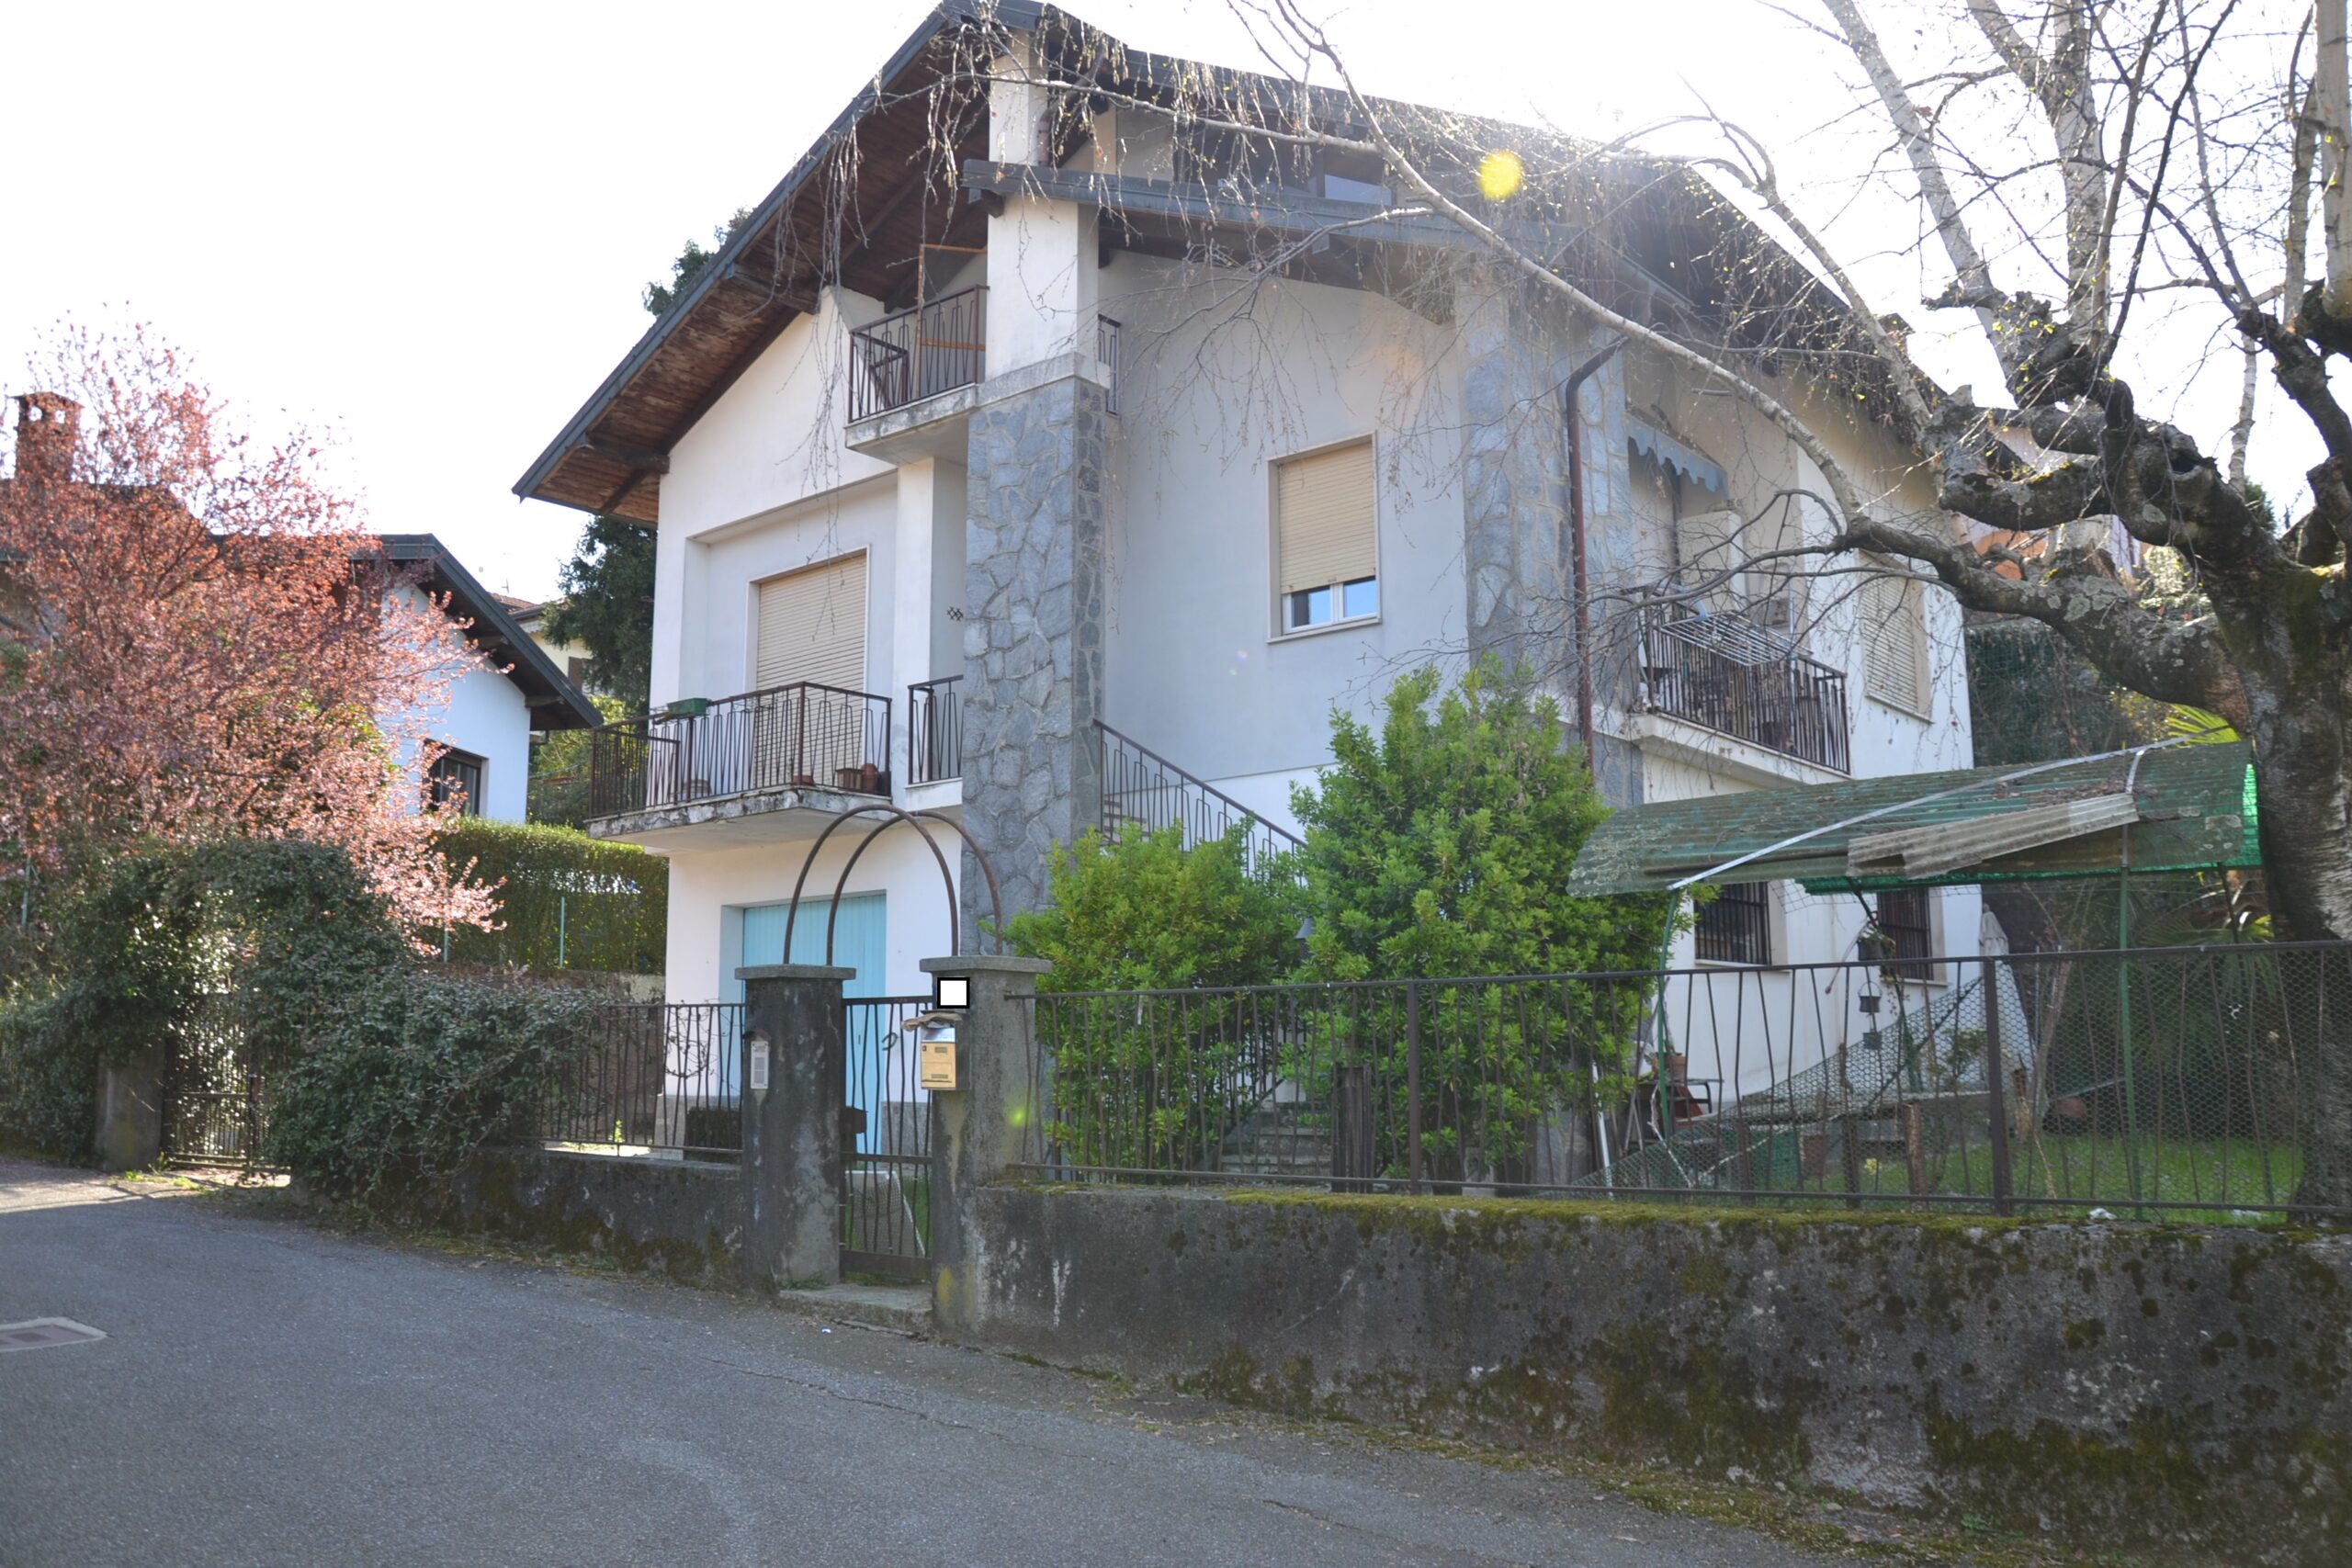 Anteprima foto Villa bifamigliare, Verbania